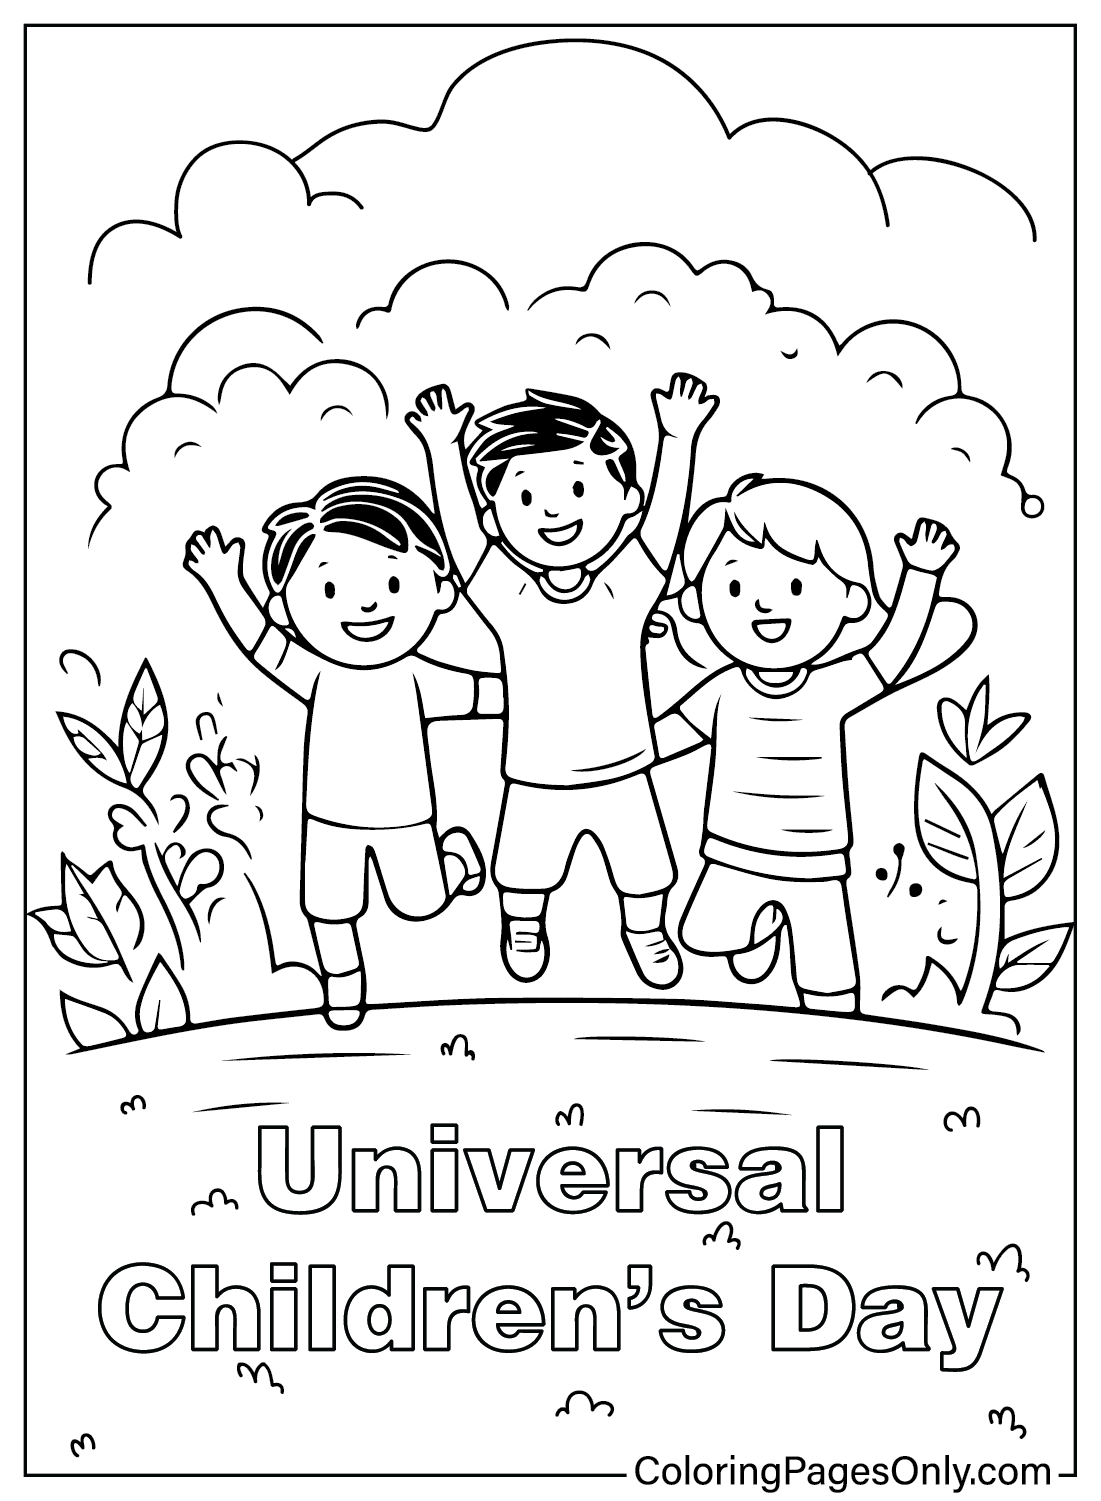 Página para colorear del Día Universal del Niño del Día del Niño